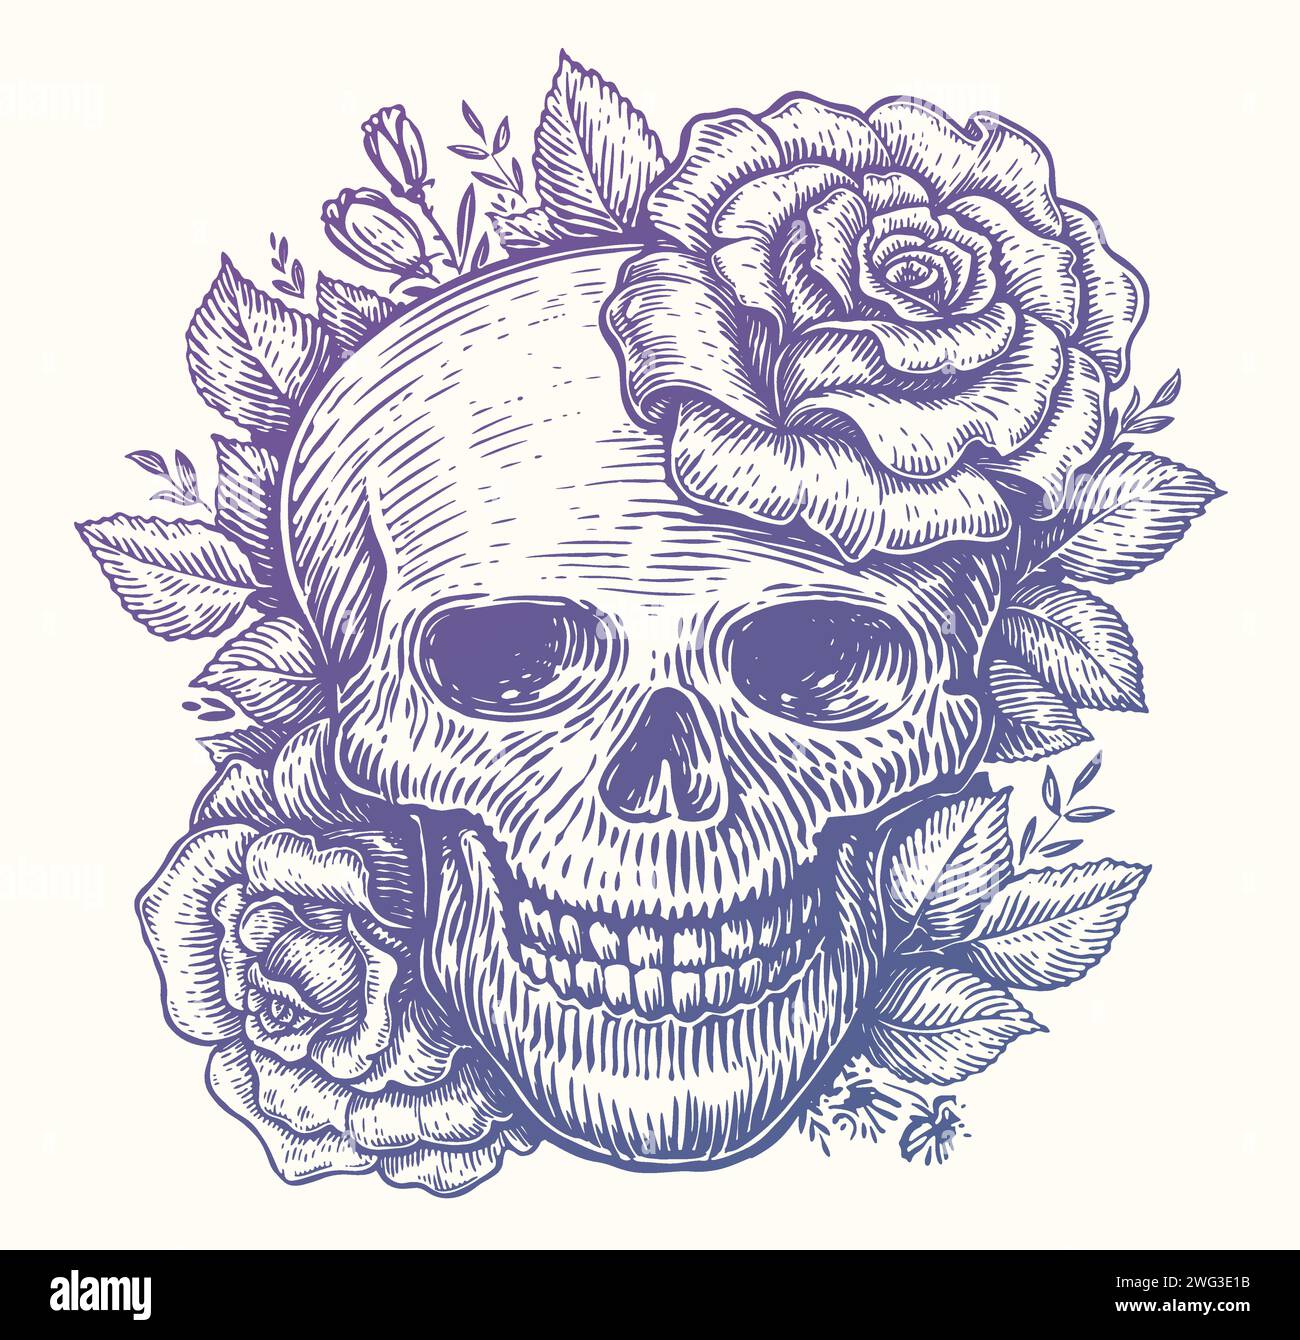 Teschio umano in fiori con foglie in stile vintage incisione. Rose e testa scheletrica. Illustrazione del vettore di schizzo Illustrazione Vettoriale